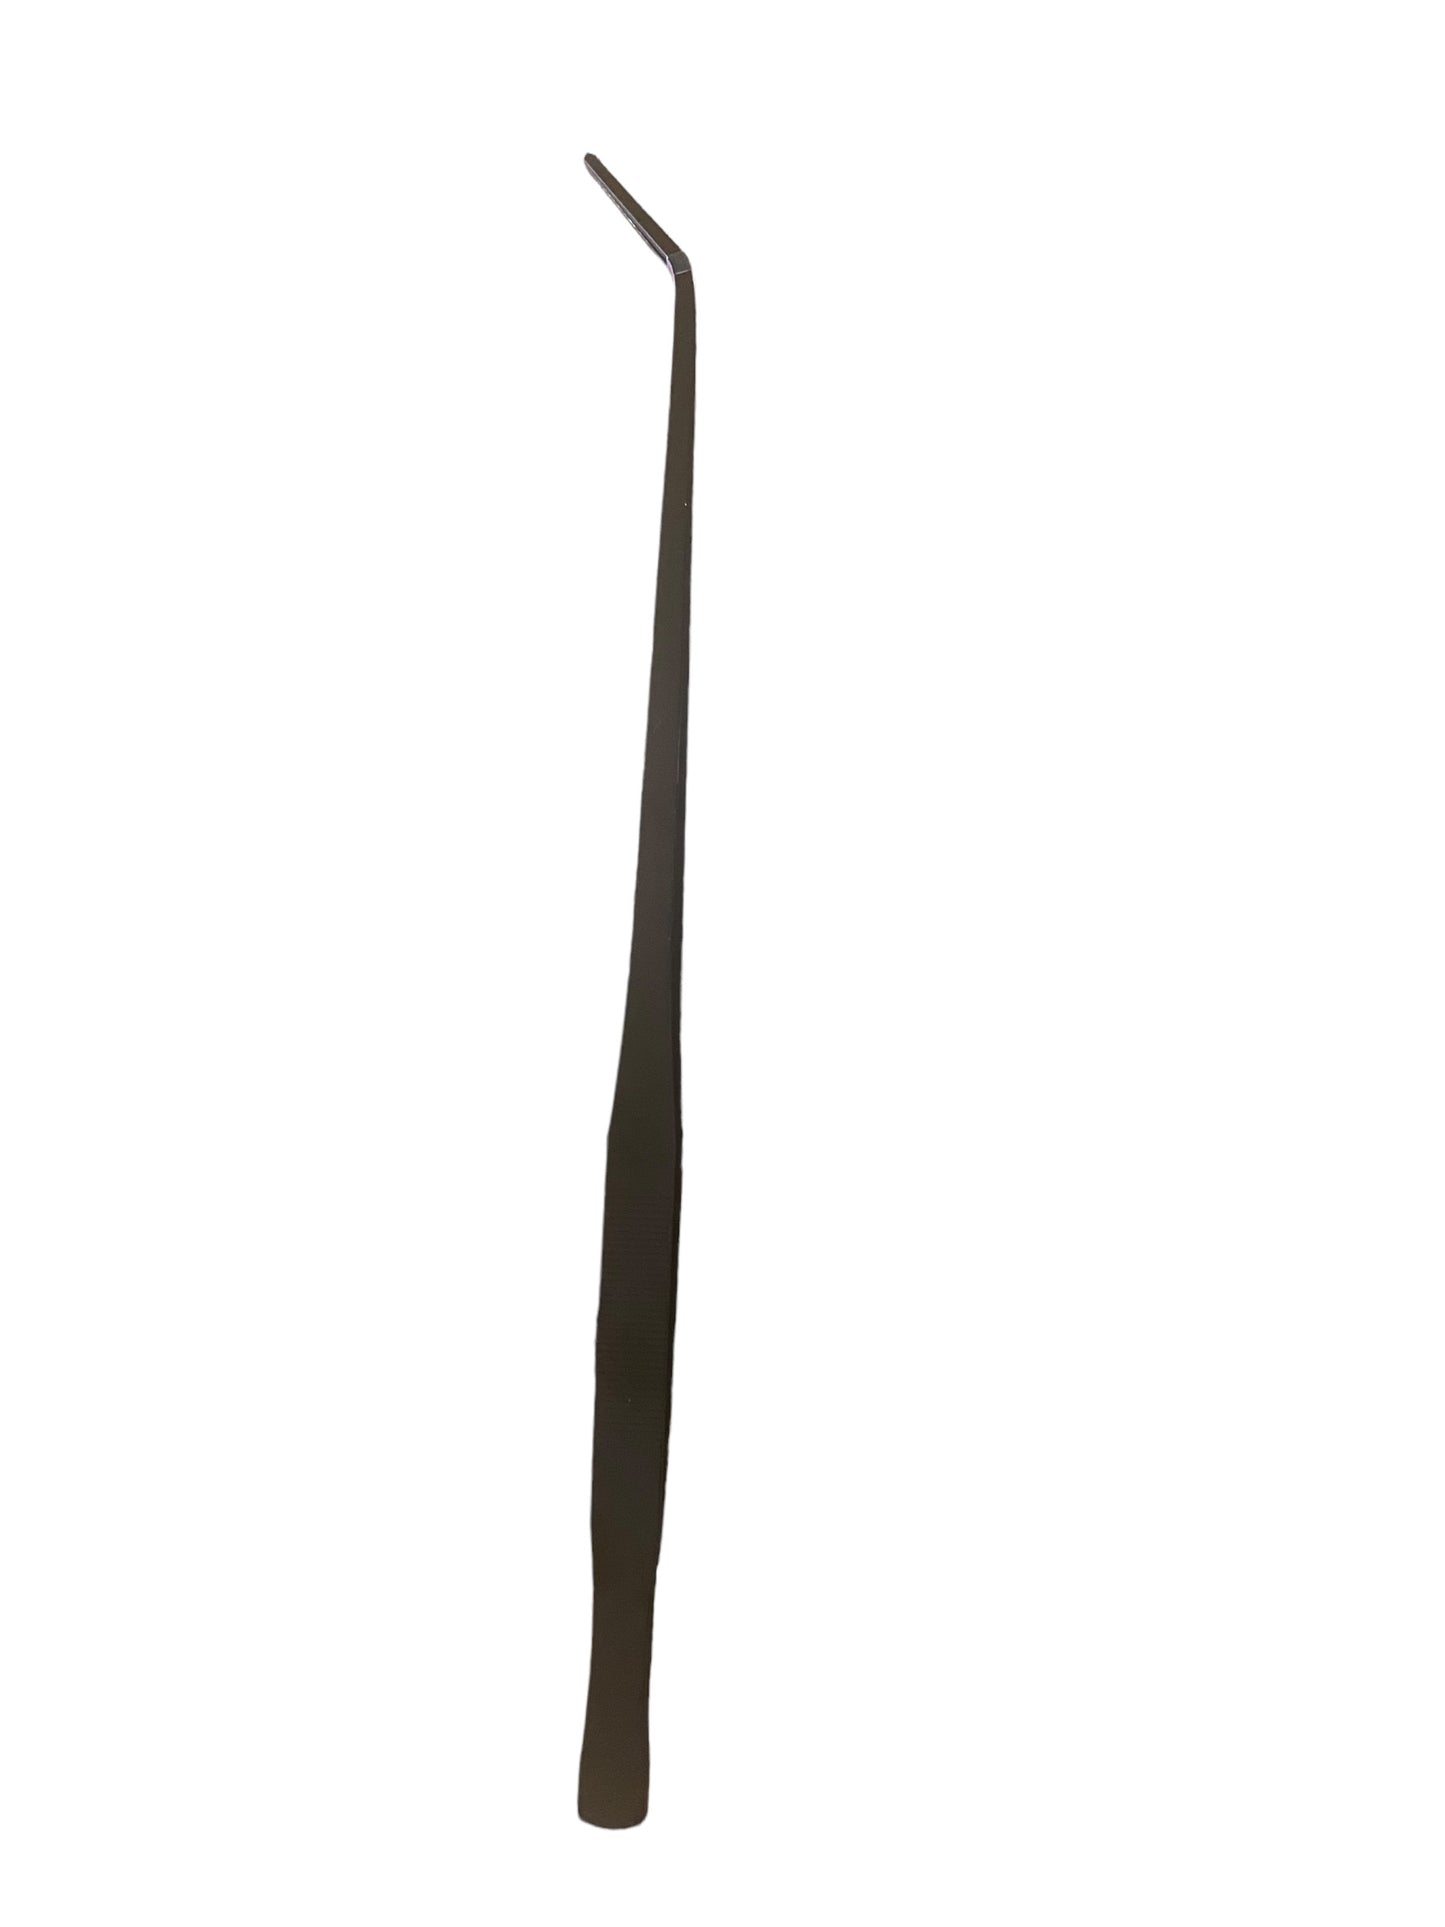 Terrarium tweezer combo - 38cm bended & straight